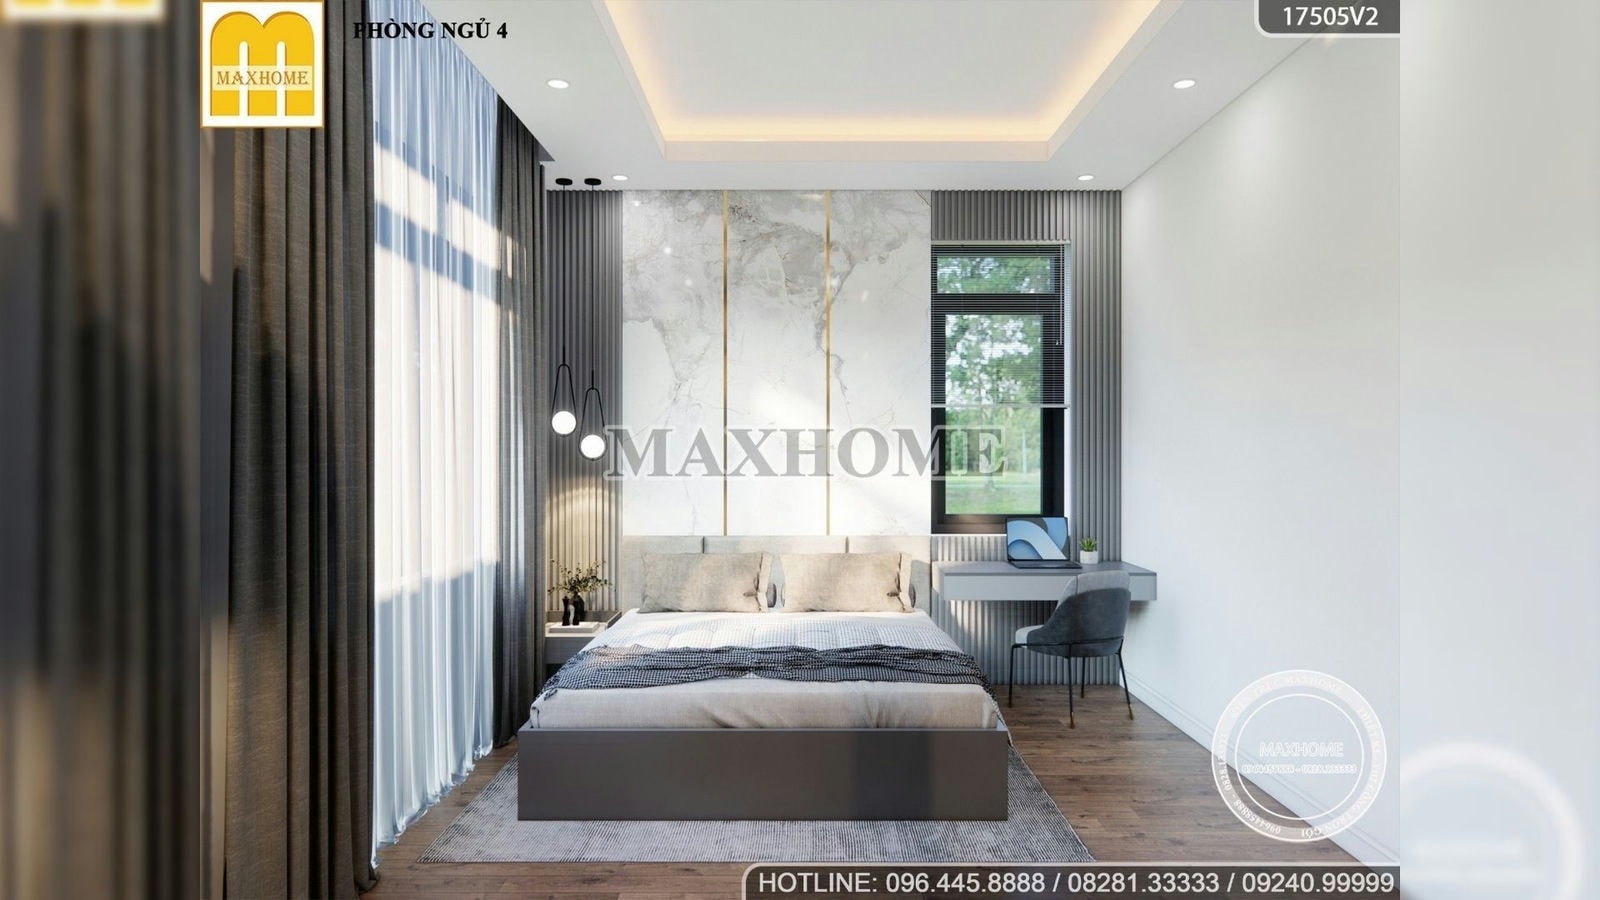 Full bản thiết kế nội thất cho nhà vườn 2 tầng 5 phòng ngủ | MH01989